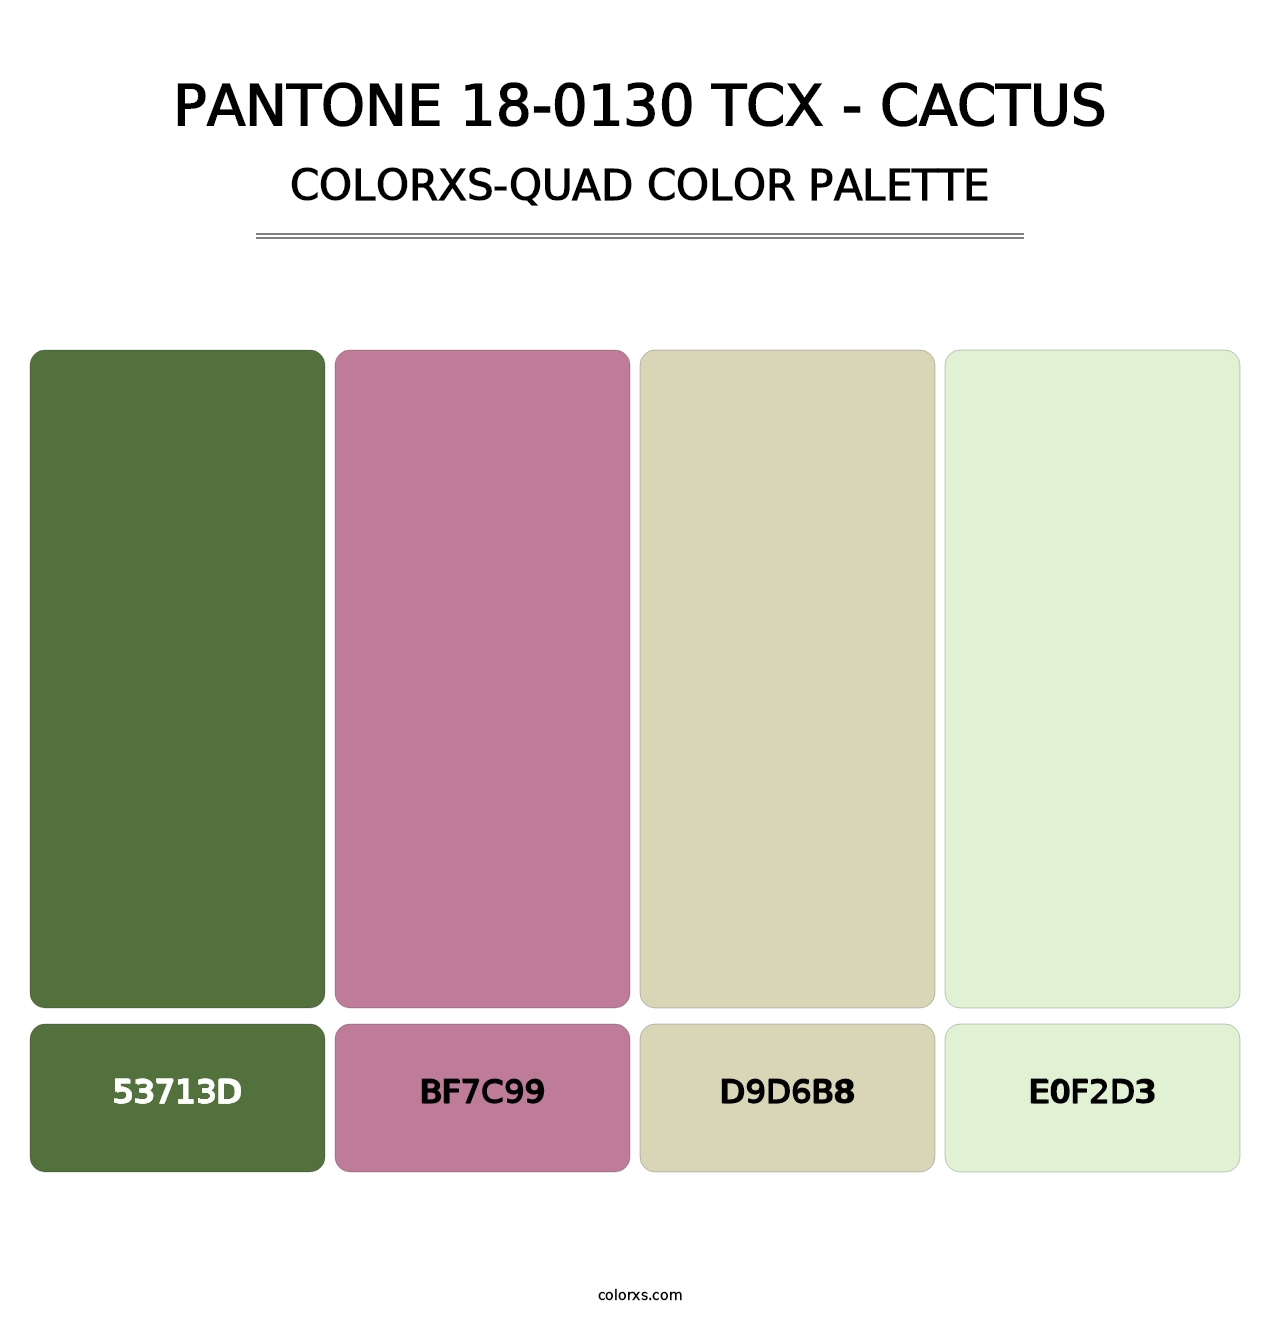 PANTONE 18-0130 TCX - Cactus - Colorxs Quad Palette